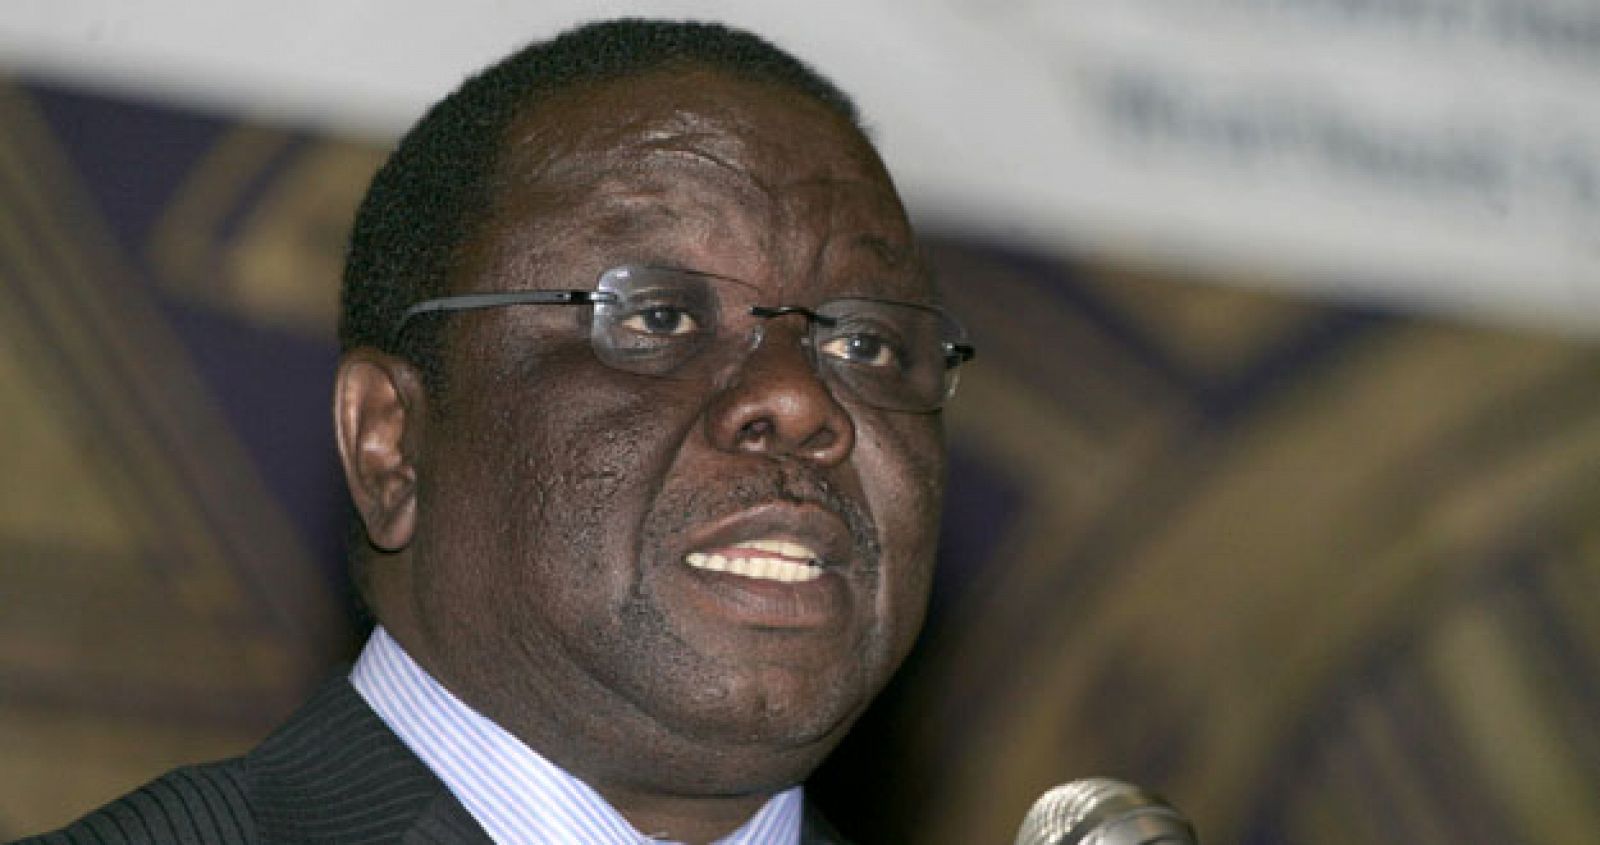 El primer ministro de Zimbabue, Morgan Tsvangirai, fue derrotado por el presidente Robert Mugabe en la controvertida elección presidencial de 2002